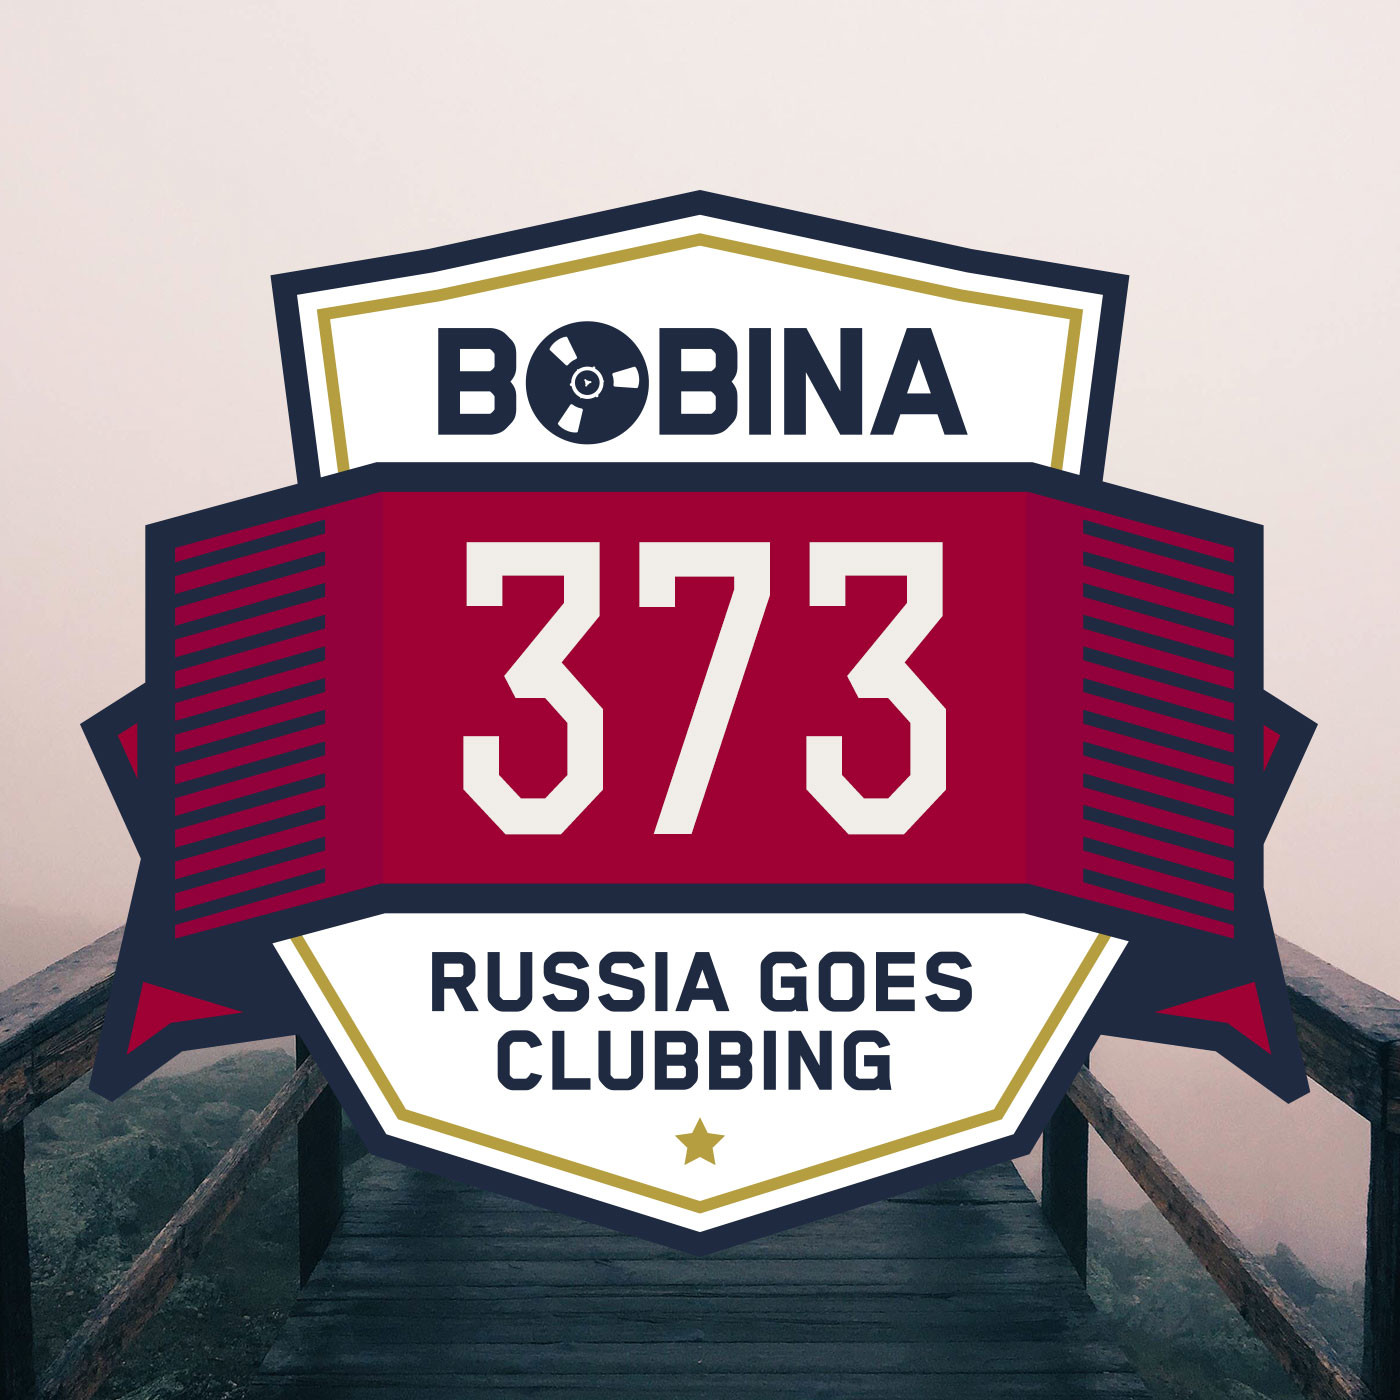 Bobina - Russia goes Clubbing. Гоу раша. Refuge bobina. Айм гоу клаб. How to go to russia